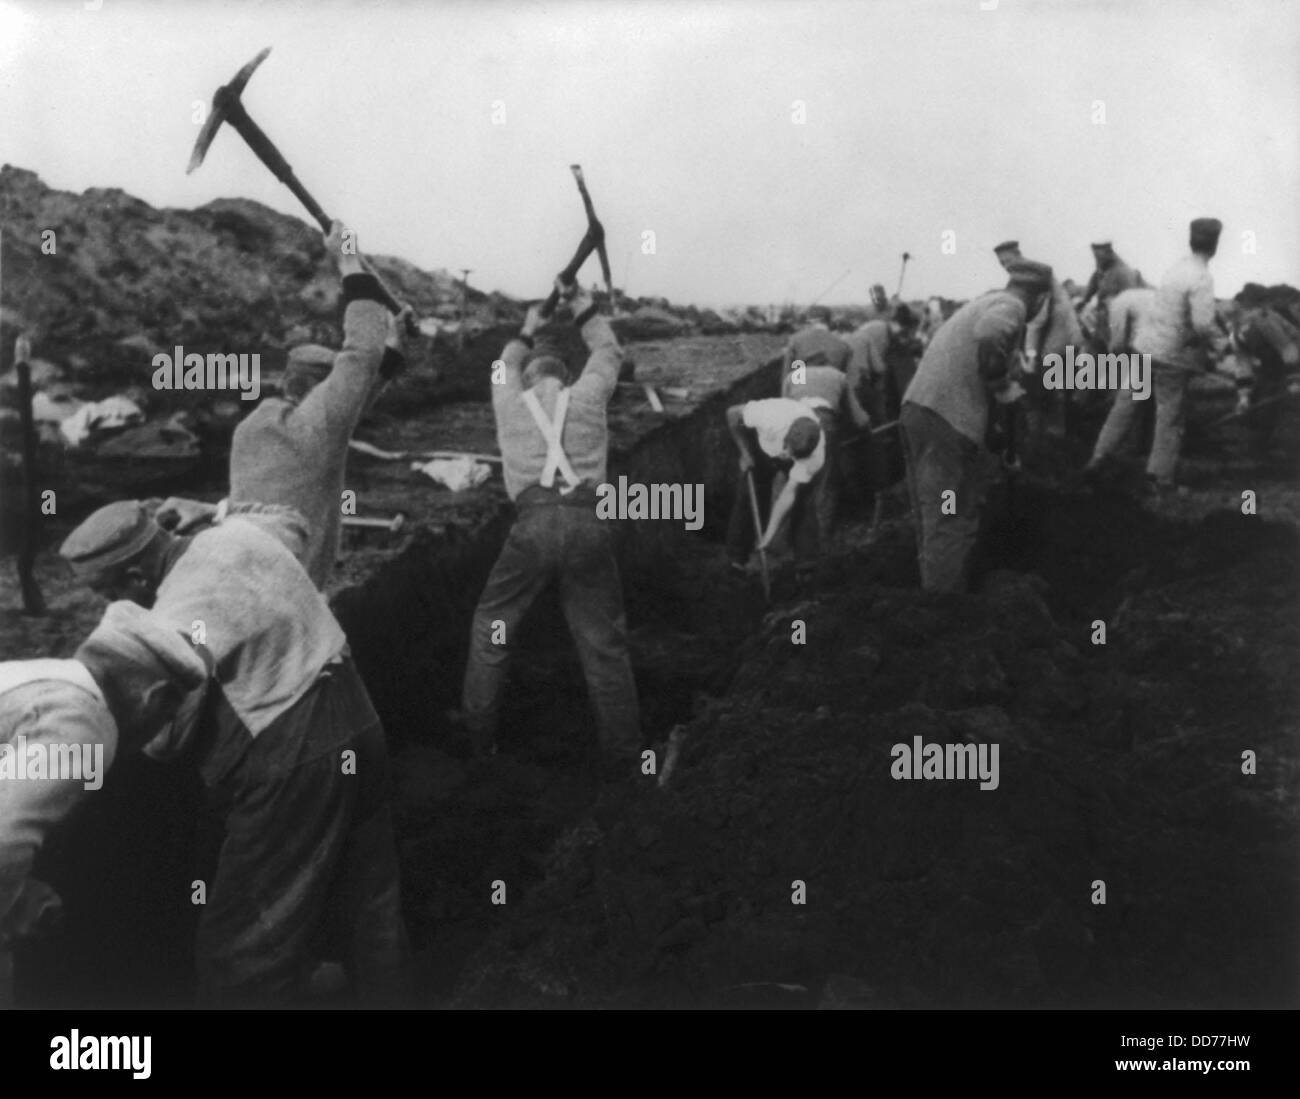 Les prisonniers politiques allemands lors de travaux forcés en 1935. Dans un camp de travail dans la région de l'Emsland Allemagne, les prisonniers à l'aide de pioches et de Banque D'Images